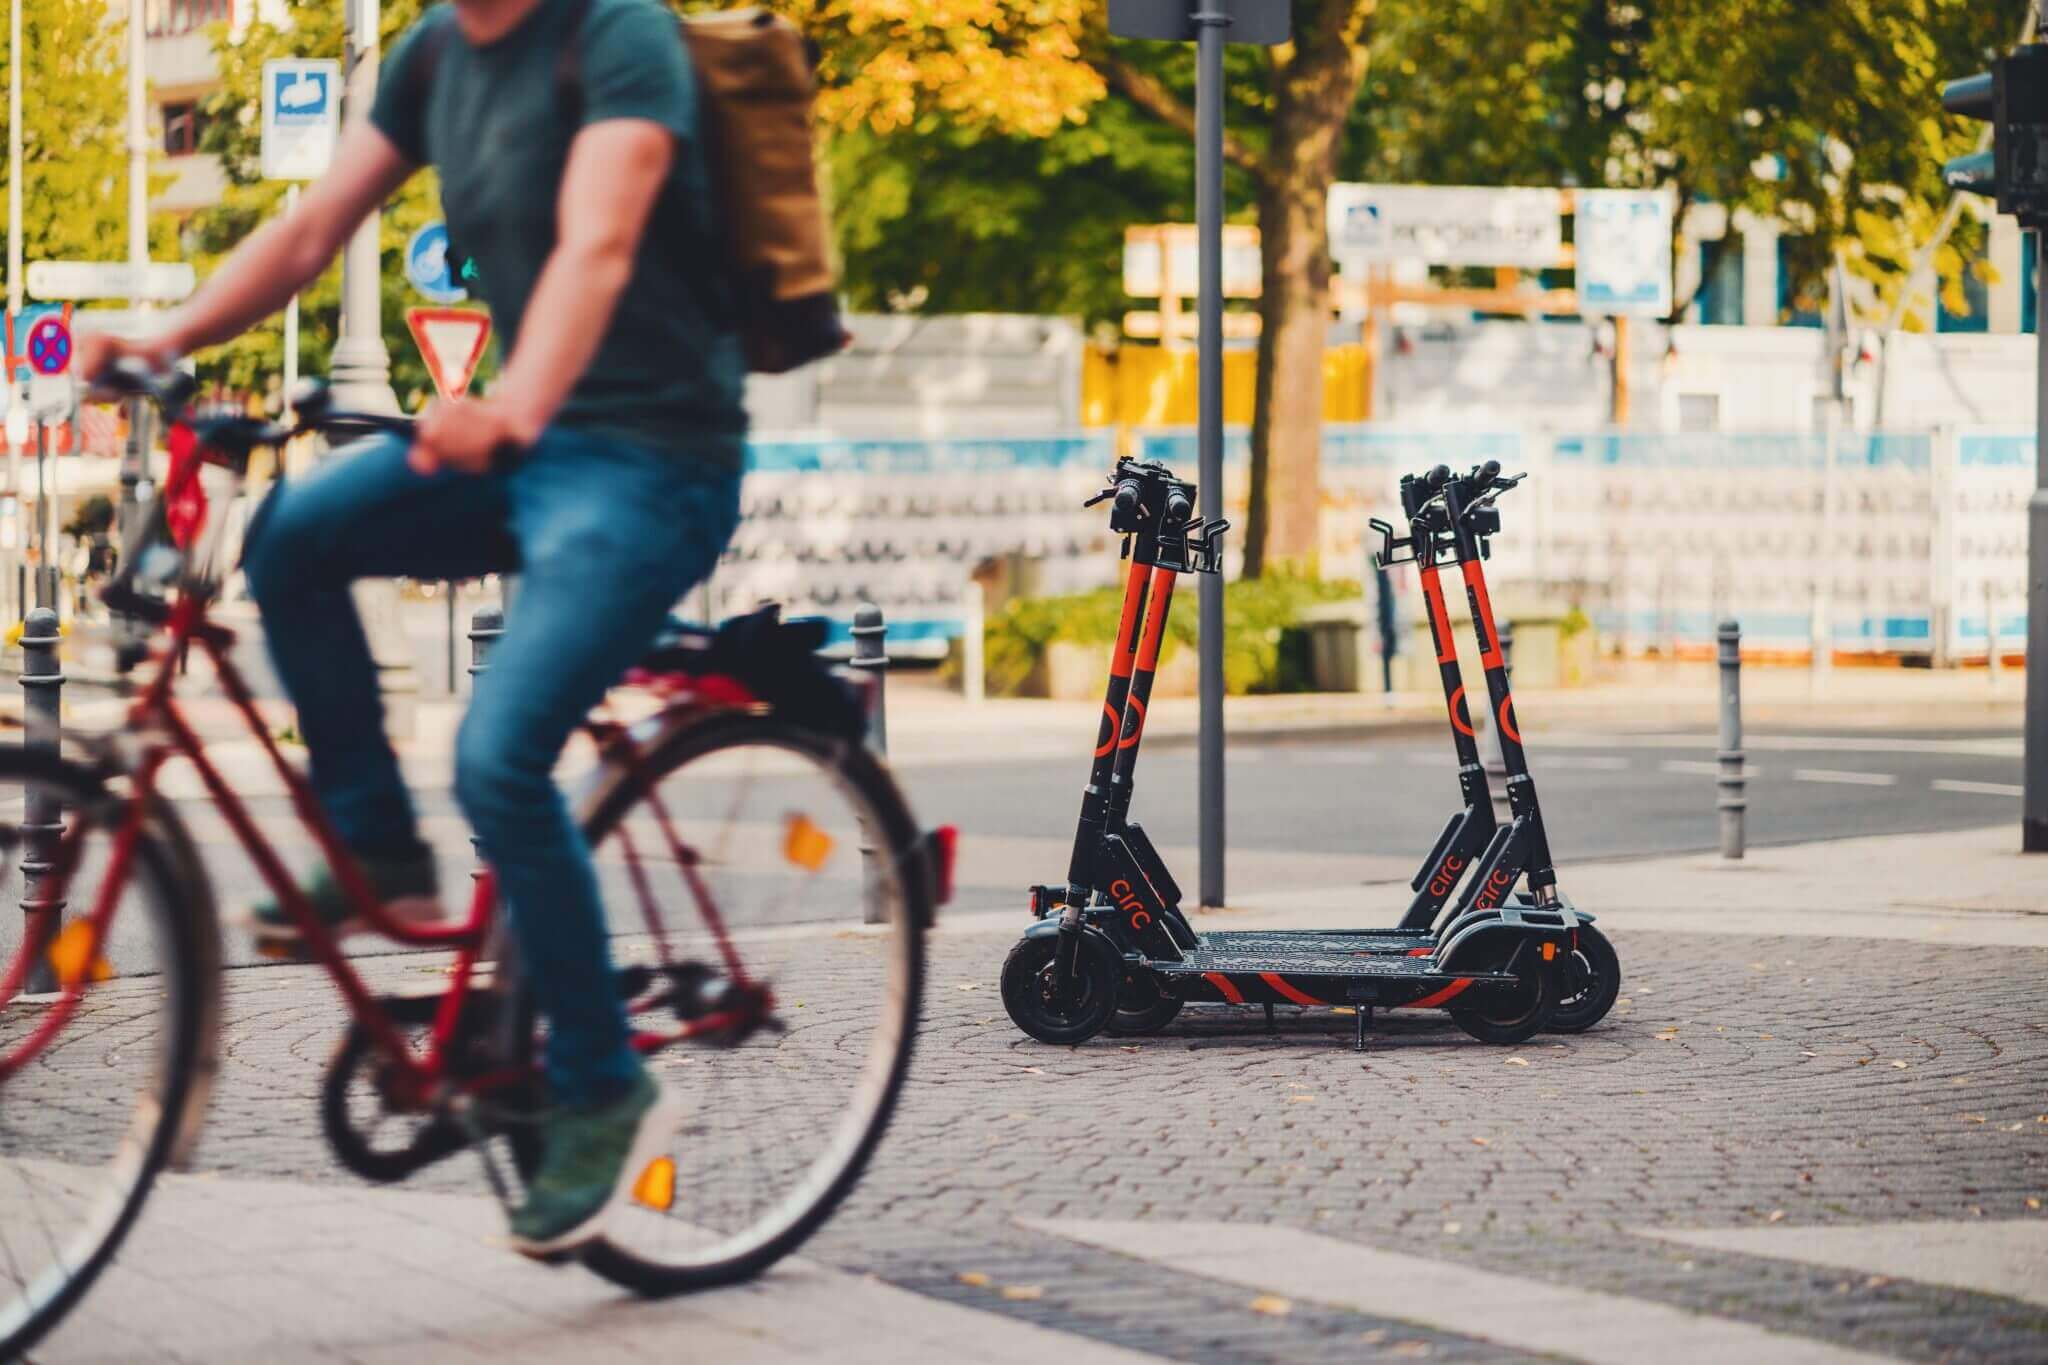 Fahrrad und elektro-roller, beides formen der nachhaltigen mobilität?